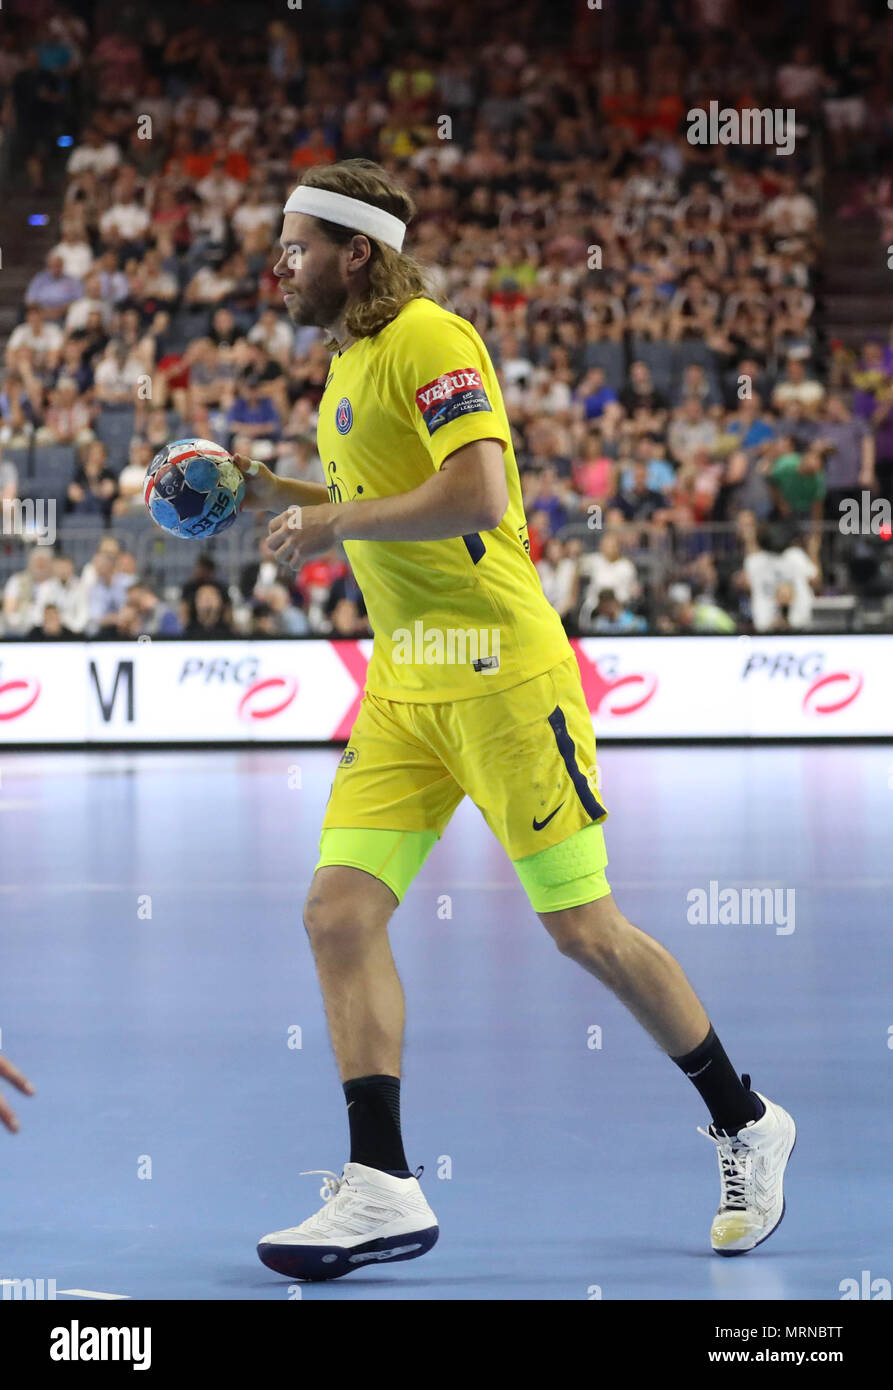 Final 4 2020 handball